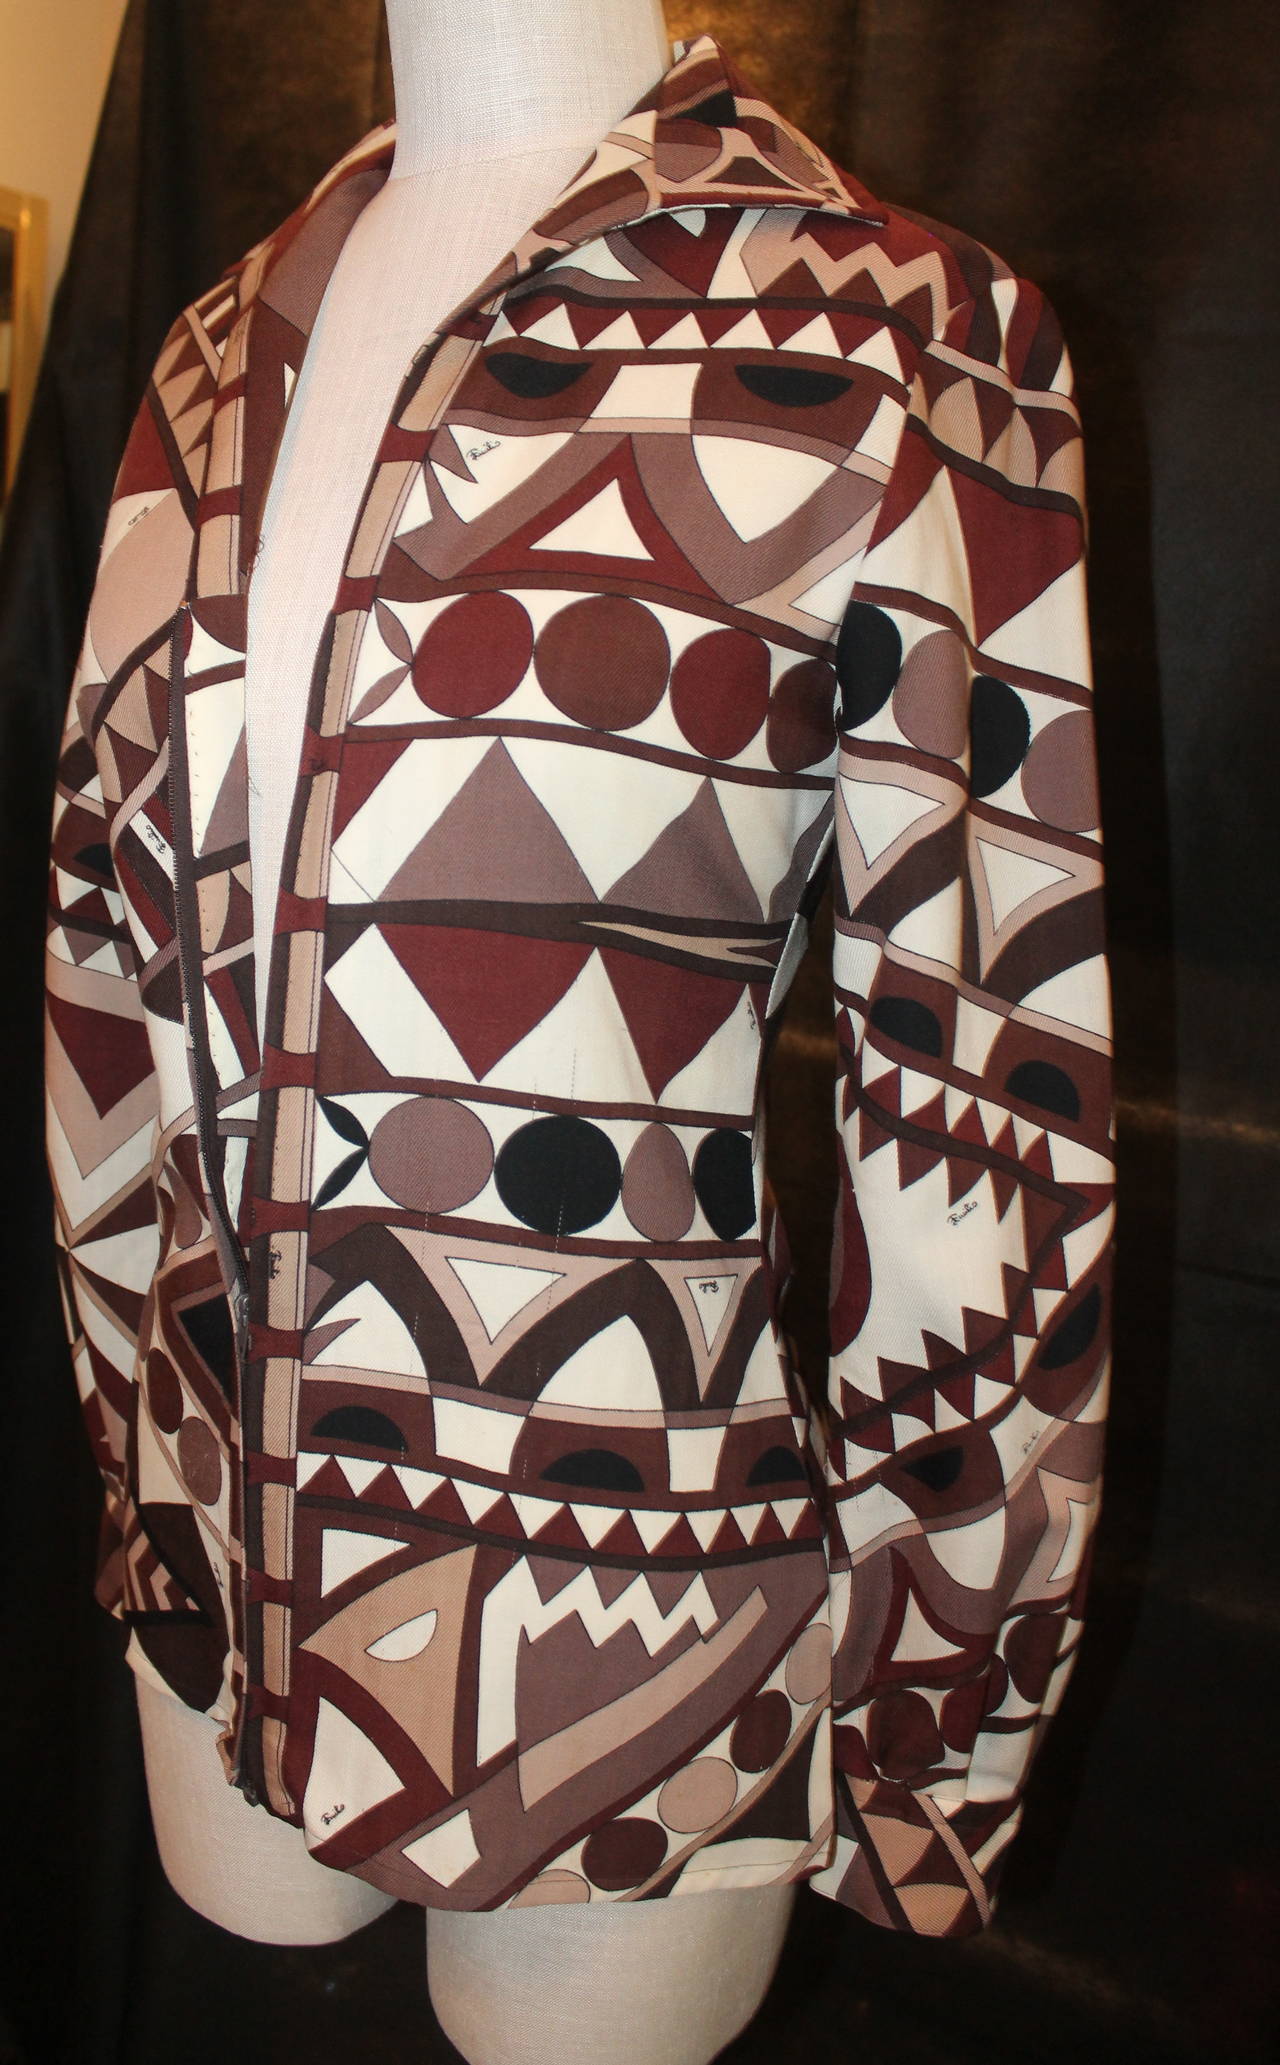 Pucci Vinatge Brown Geomtric Print Jacket/Shirt - circa 1960er Jahre - S. Dieses Stück ist in sehr gutem Vintage-Zustand. Ein passender Maxirock ist auf Lager. Vintage Größe 10. 

Abmessungen:
Büste- 34